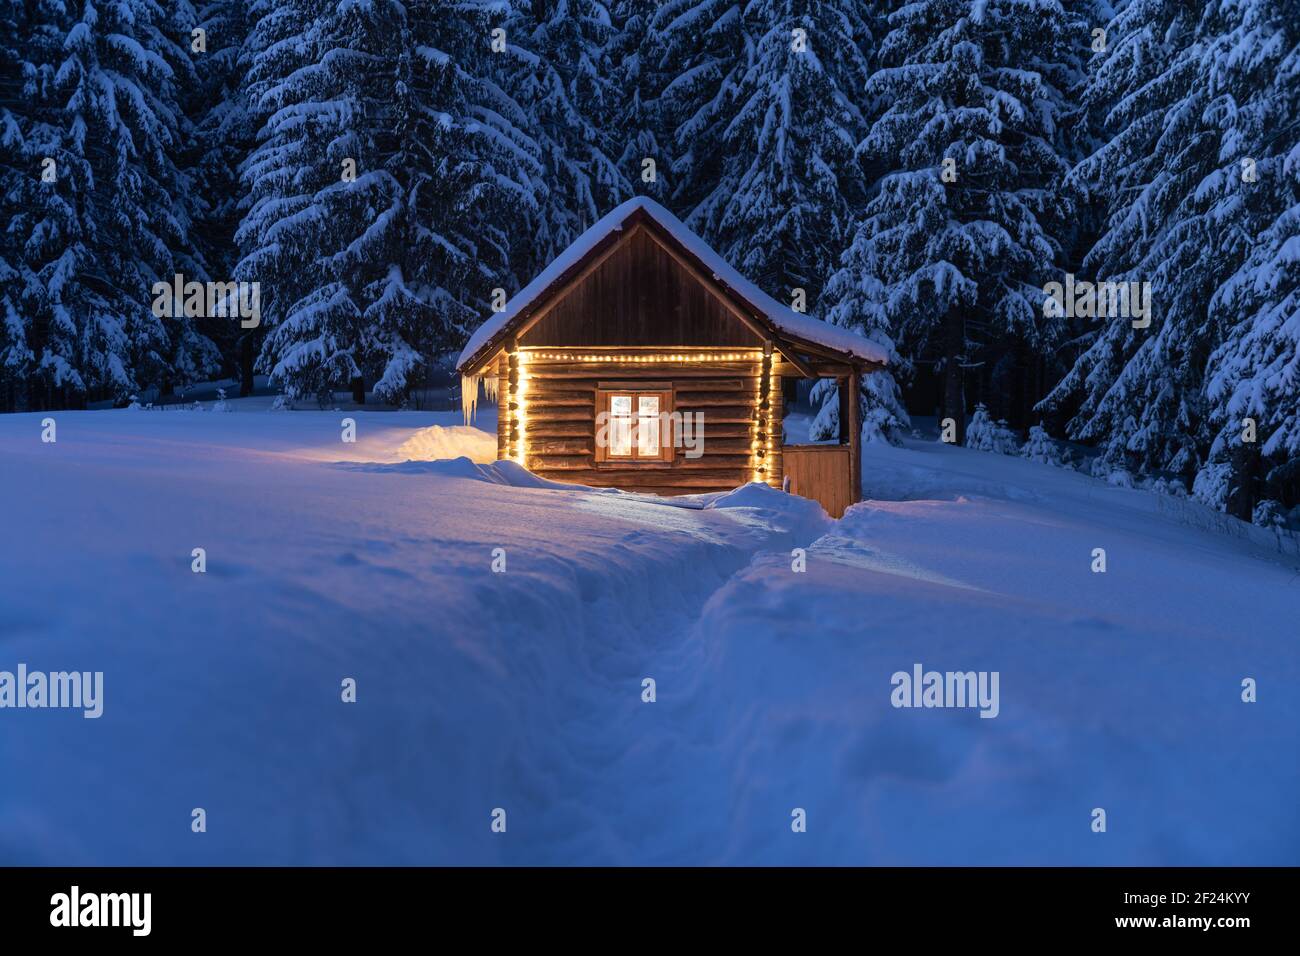 Fantastische Winterlandschaft mit glühender Holzhütte im verschneiten Wald. Gemütliches Haus in den Karpaten. Weihnachtsfeiertagskonzept Stockfoto